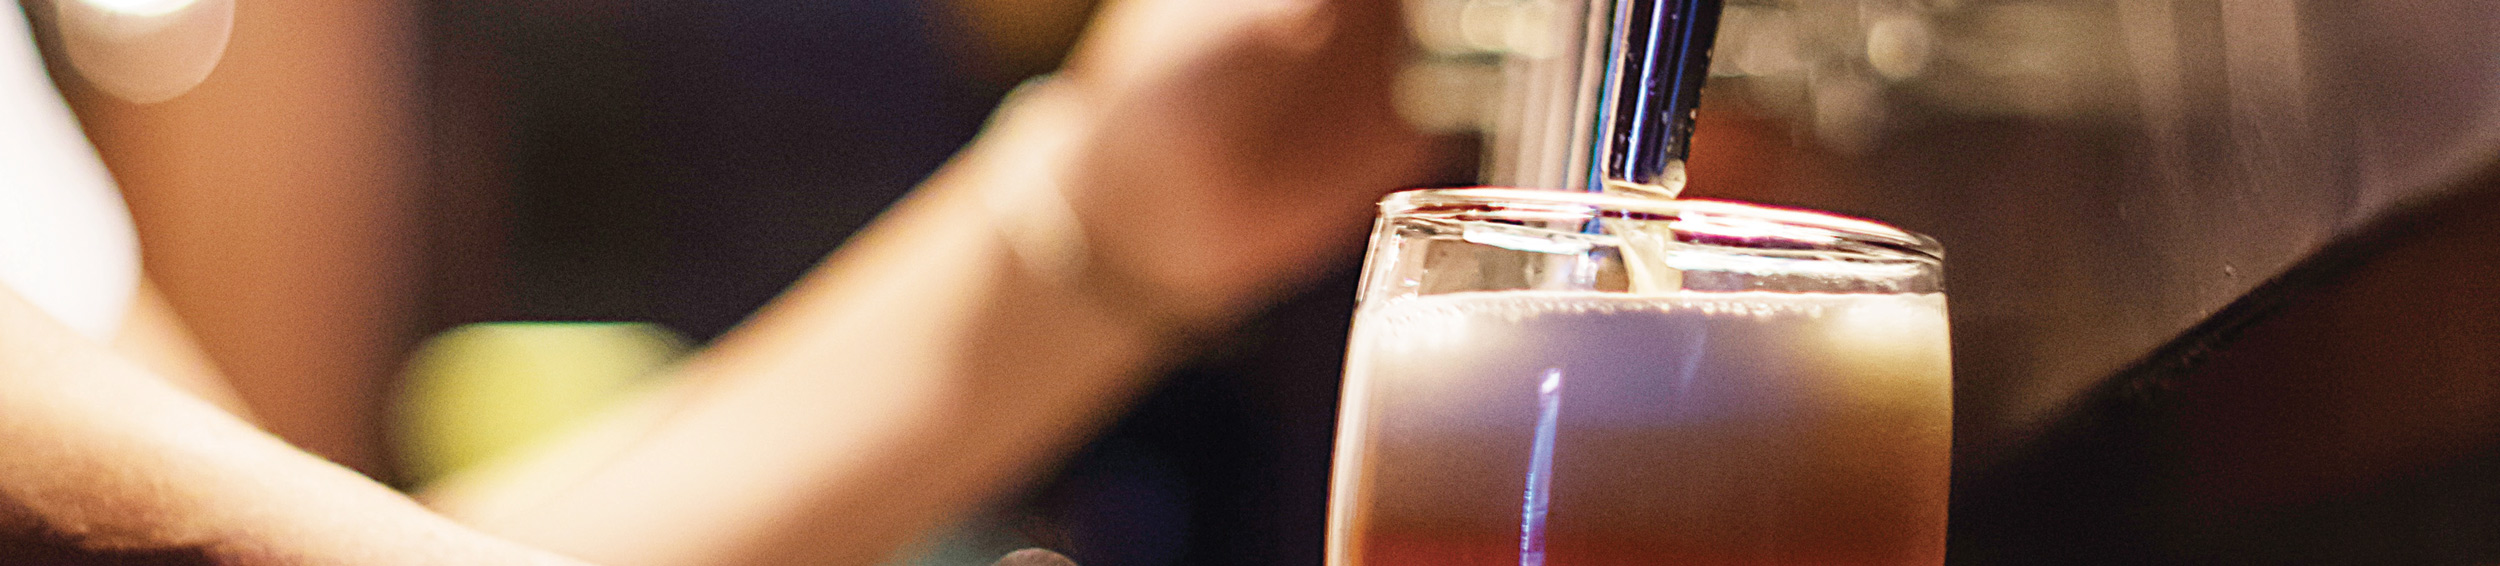 Birra Fiera American Ipa | Birra Dell'eremo